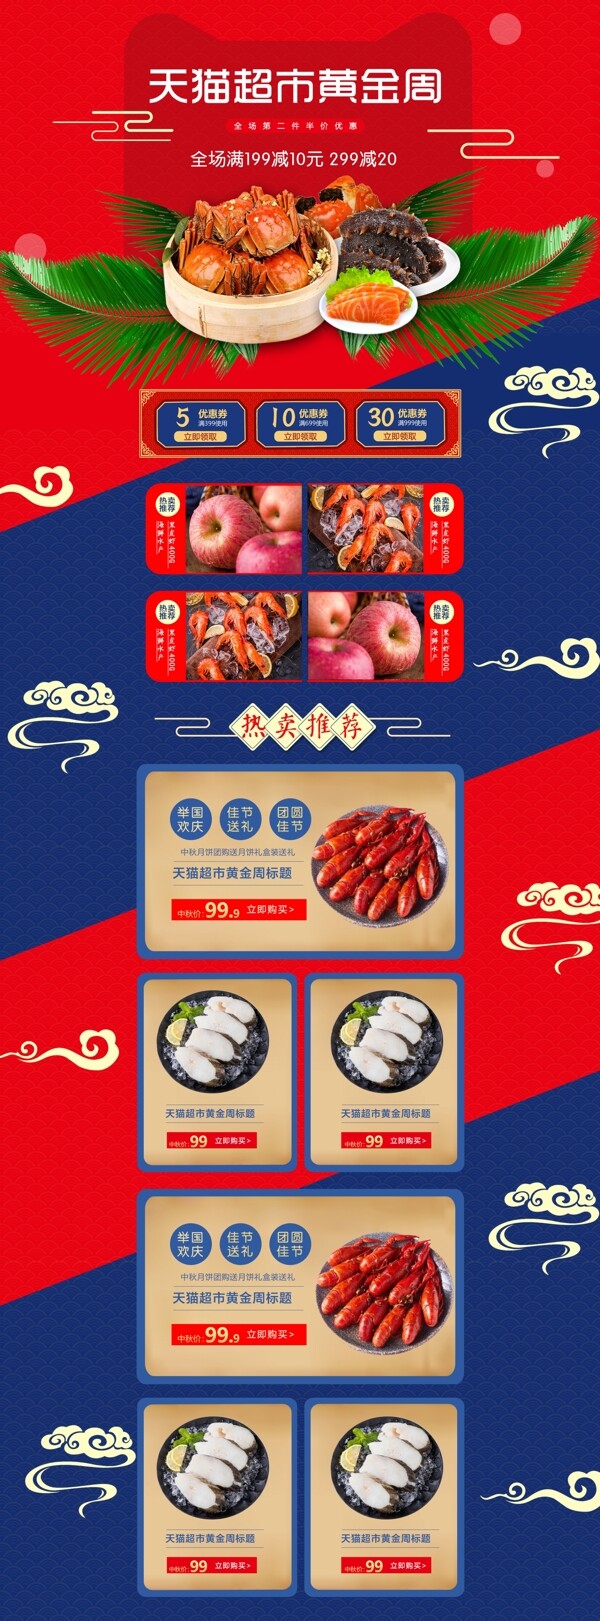 天猫超市首页生鲜水果美食撞色中国风